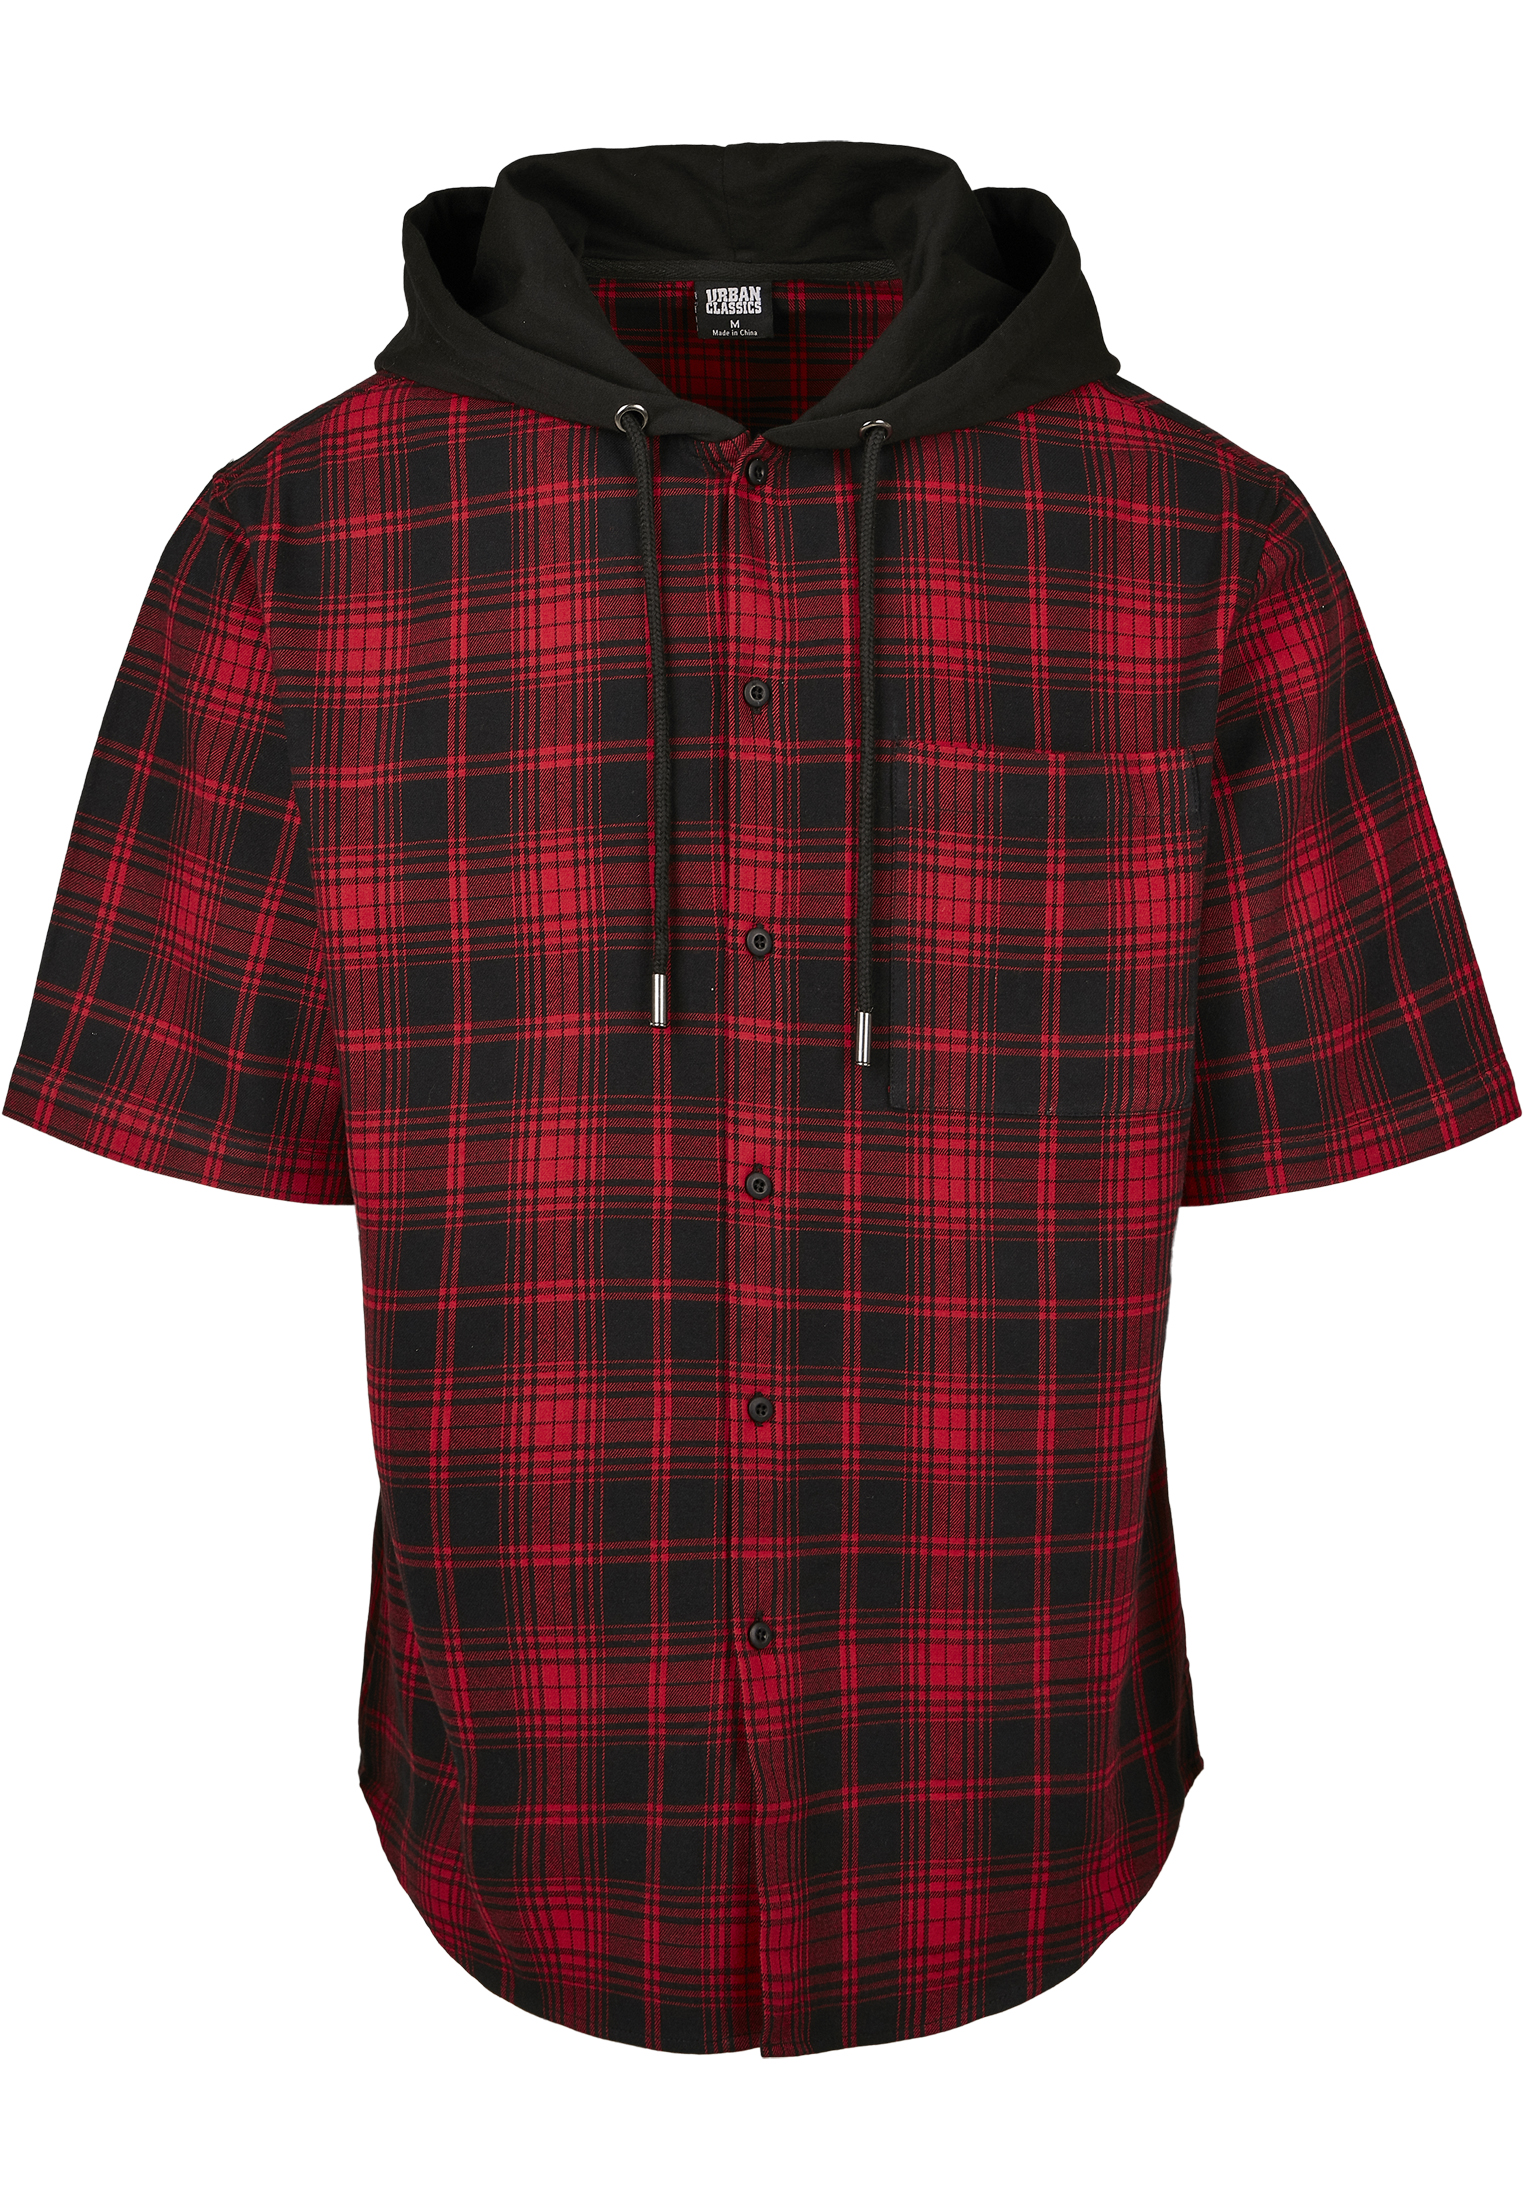 Hemden Hooded Short Sleeve Shirt in Farbe black